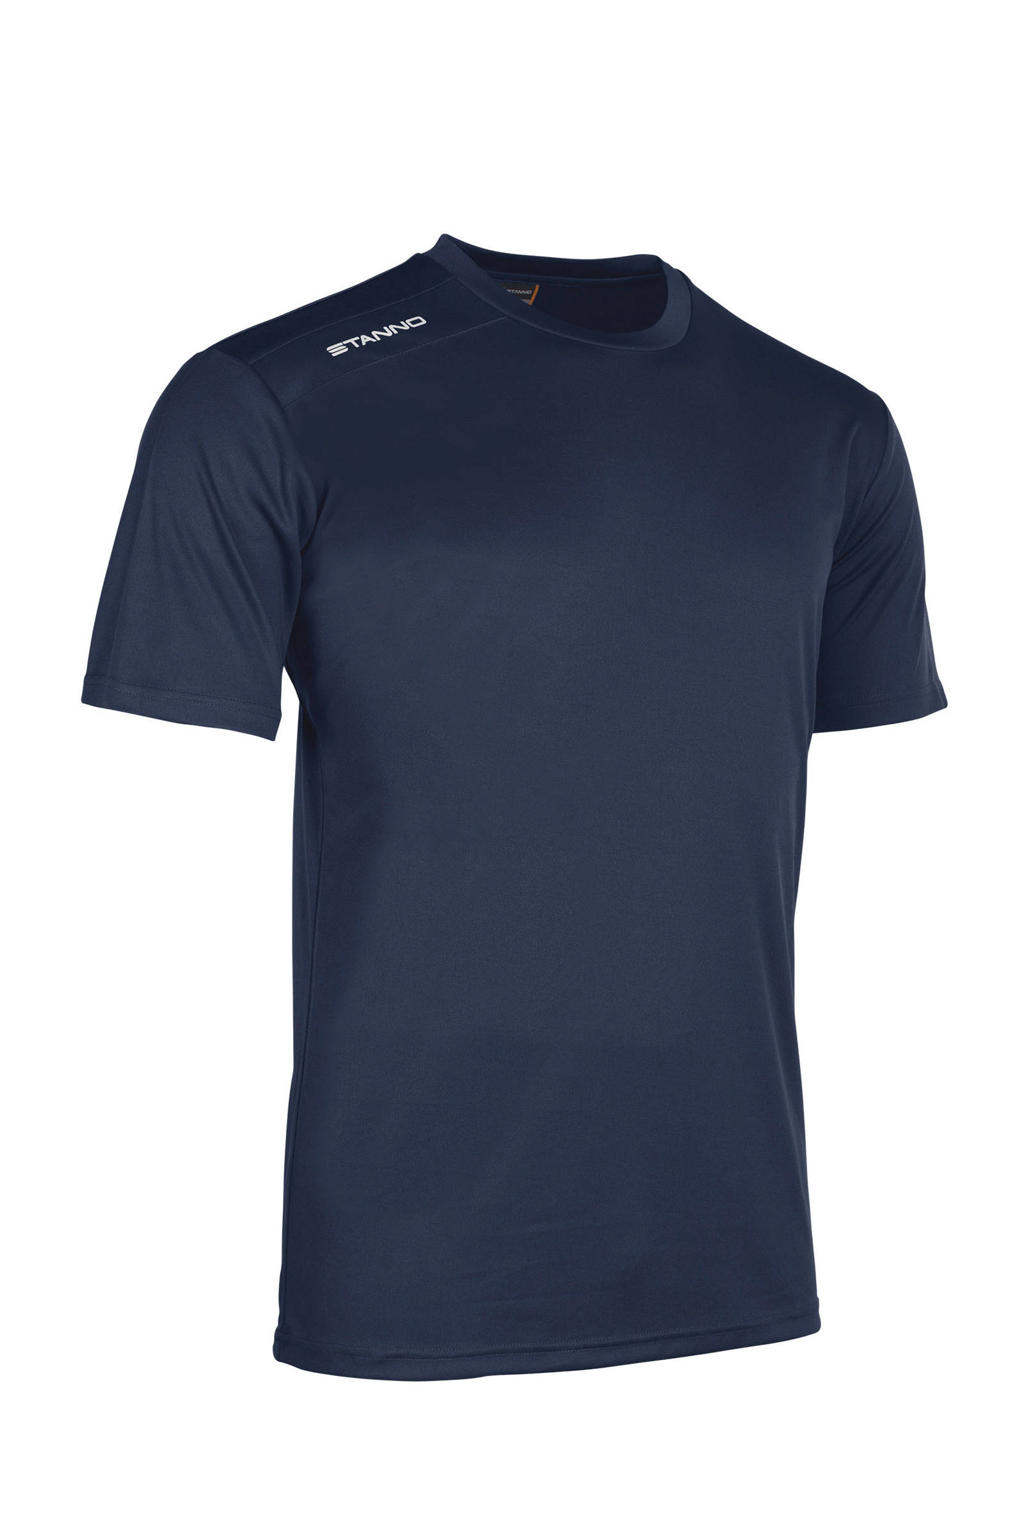 Donkerblauwe jongens Stanno Junior sport T-shirt van polyester met korte mouwen en ronde hals